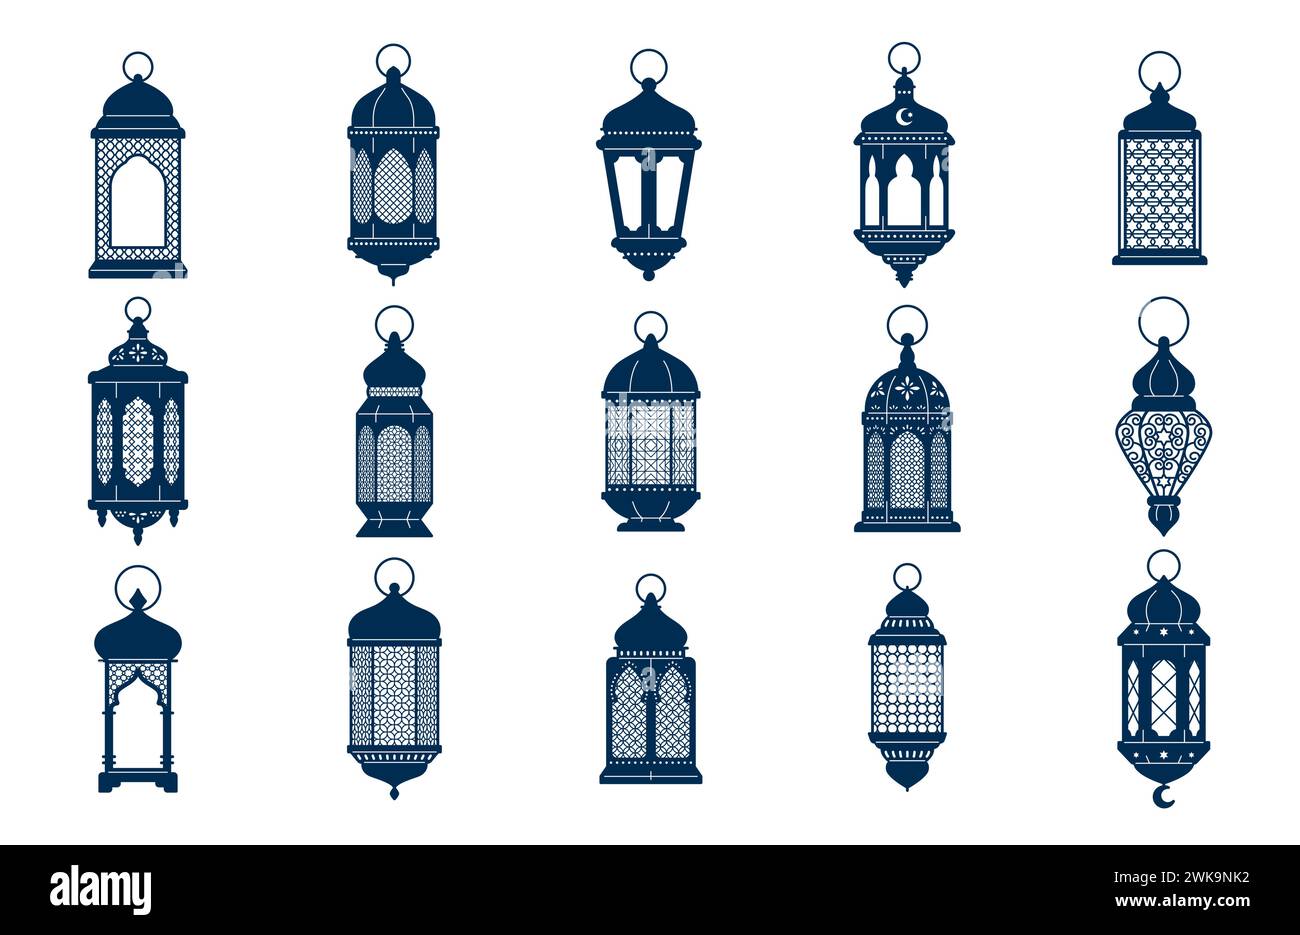 Arabisch-islamische Laternen oder Lampensilhouetten, ramadan- oder eid-mubarak-Weihnachtsbeleuchtung. Isolierte Vektoren verzierte Symbole für Licht, Freude und Feier. Dekorative Häuser und festliche Straßenlampen Stock Vektor